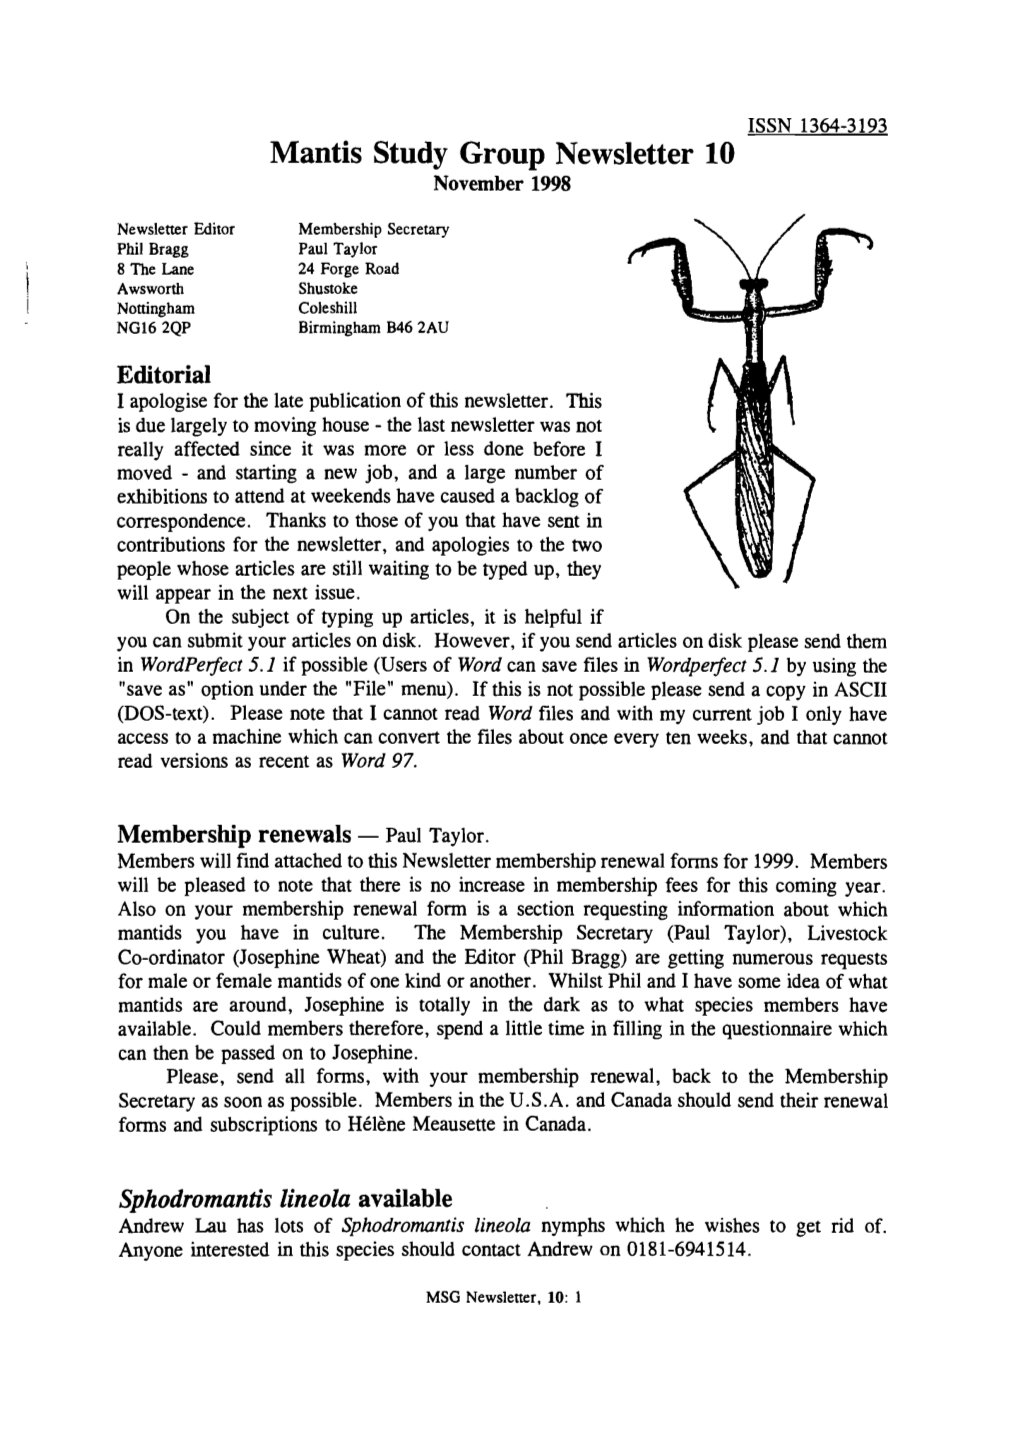 Mantis Study Group Newsletter, 10 (November 1998)